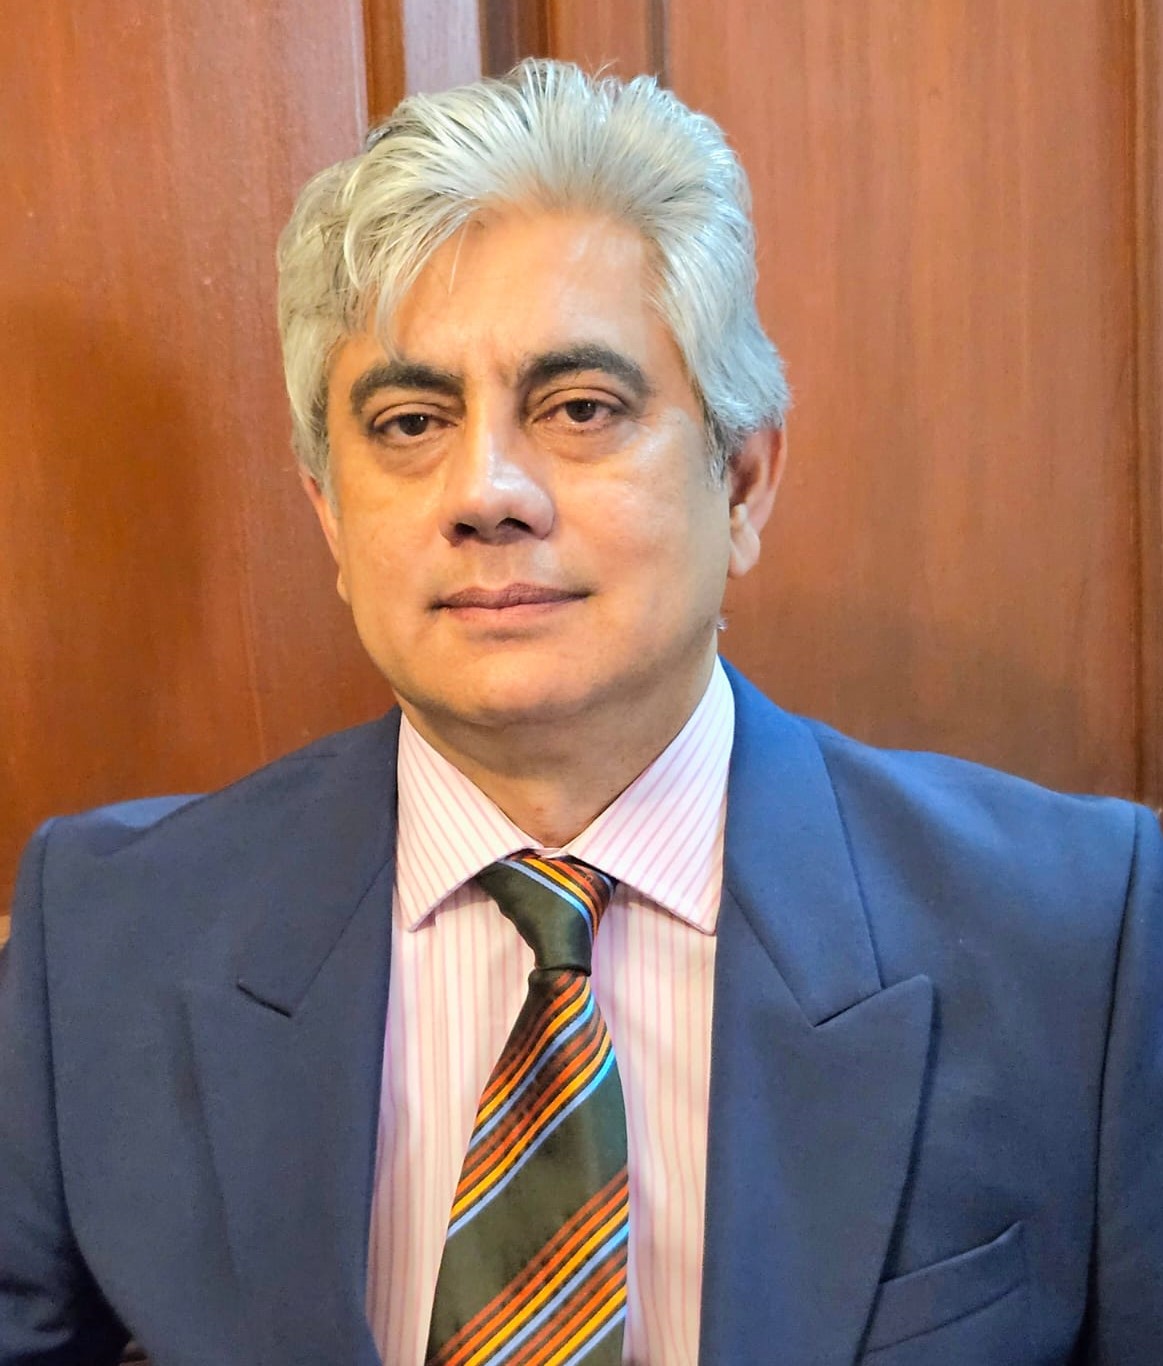 Dr. Muhammad Ahmad Kazi